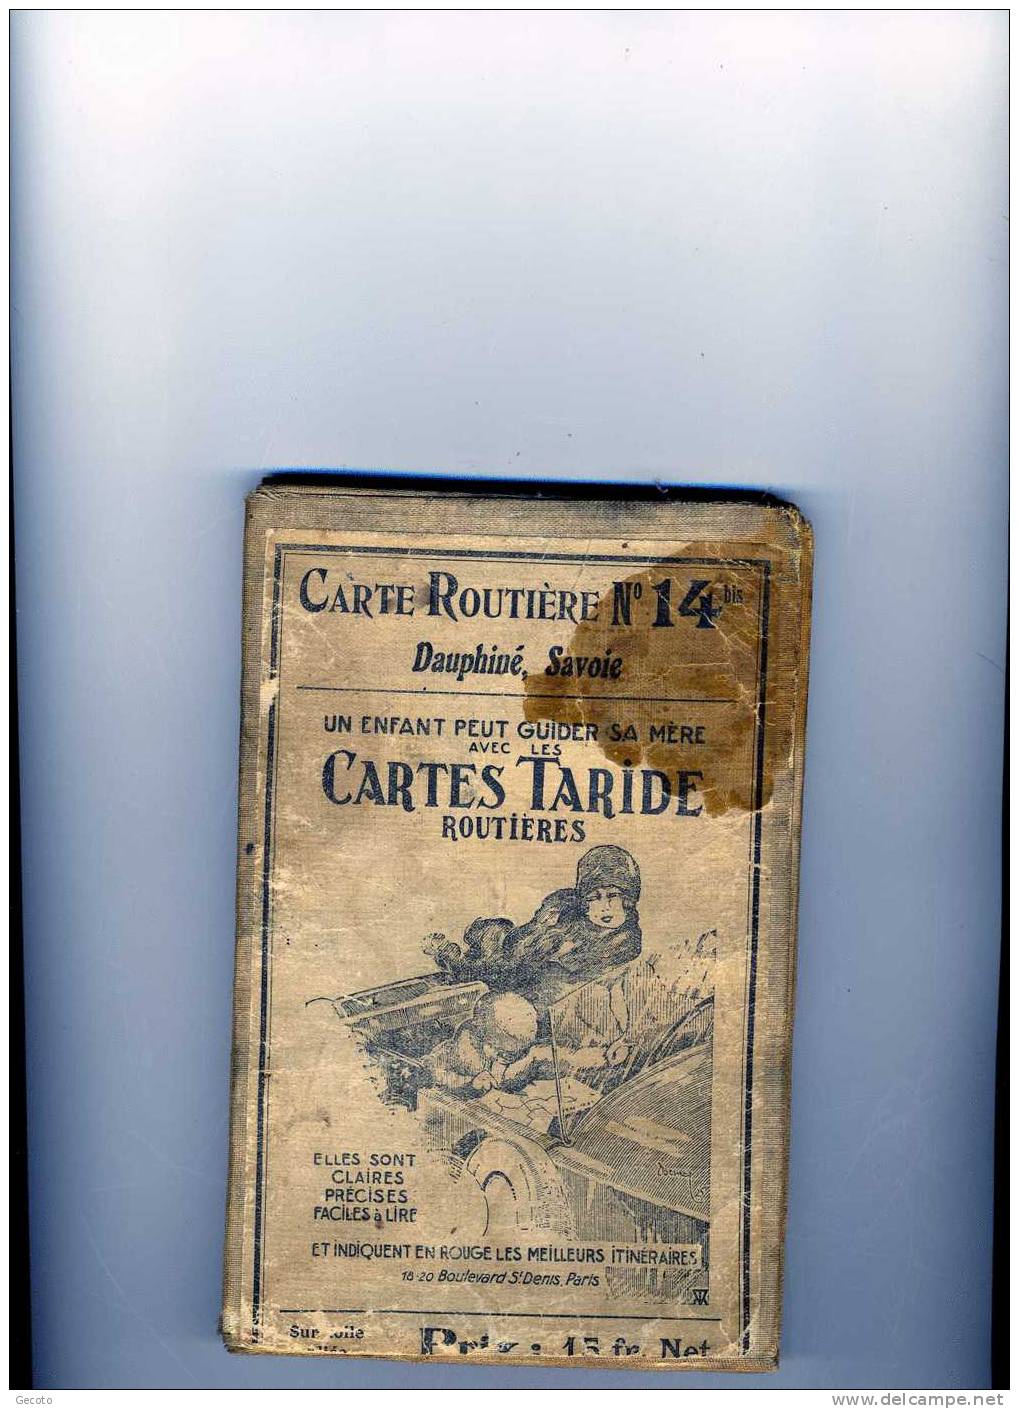 Cartes Taride N°14 Dauphiné Savoie - Cartes Routières